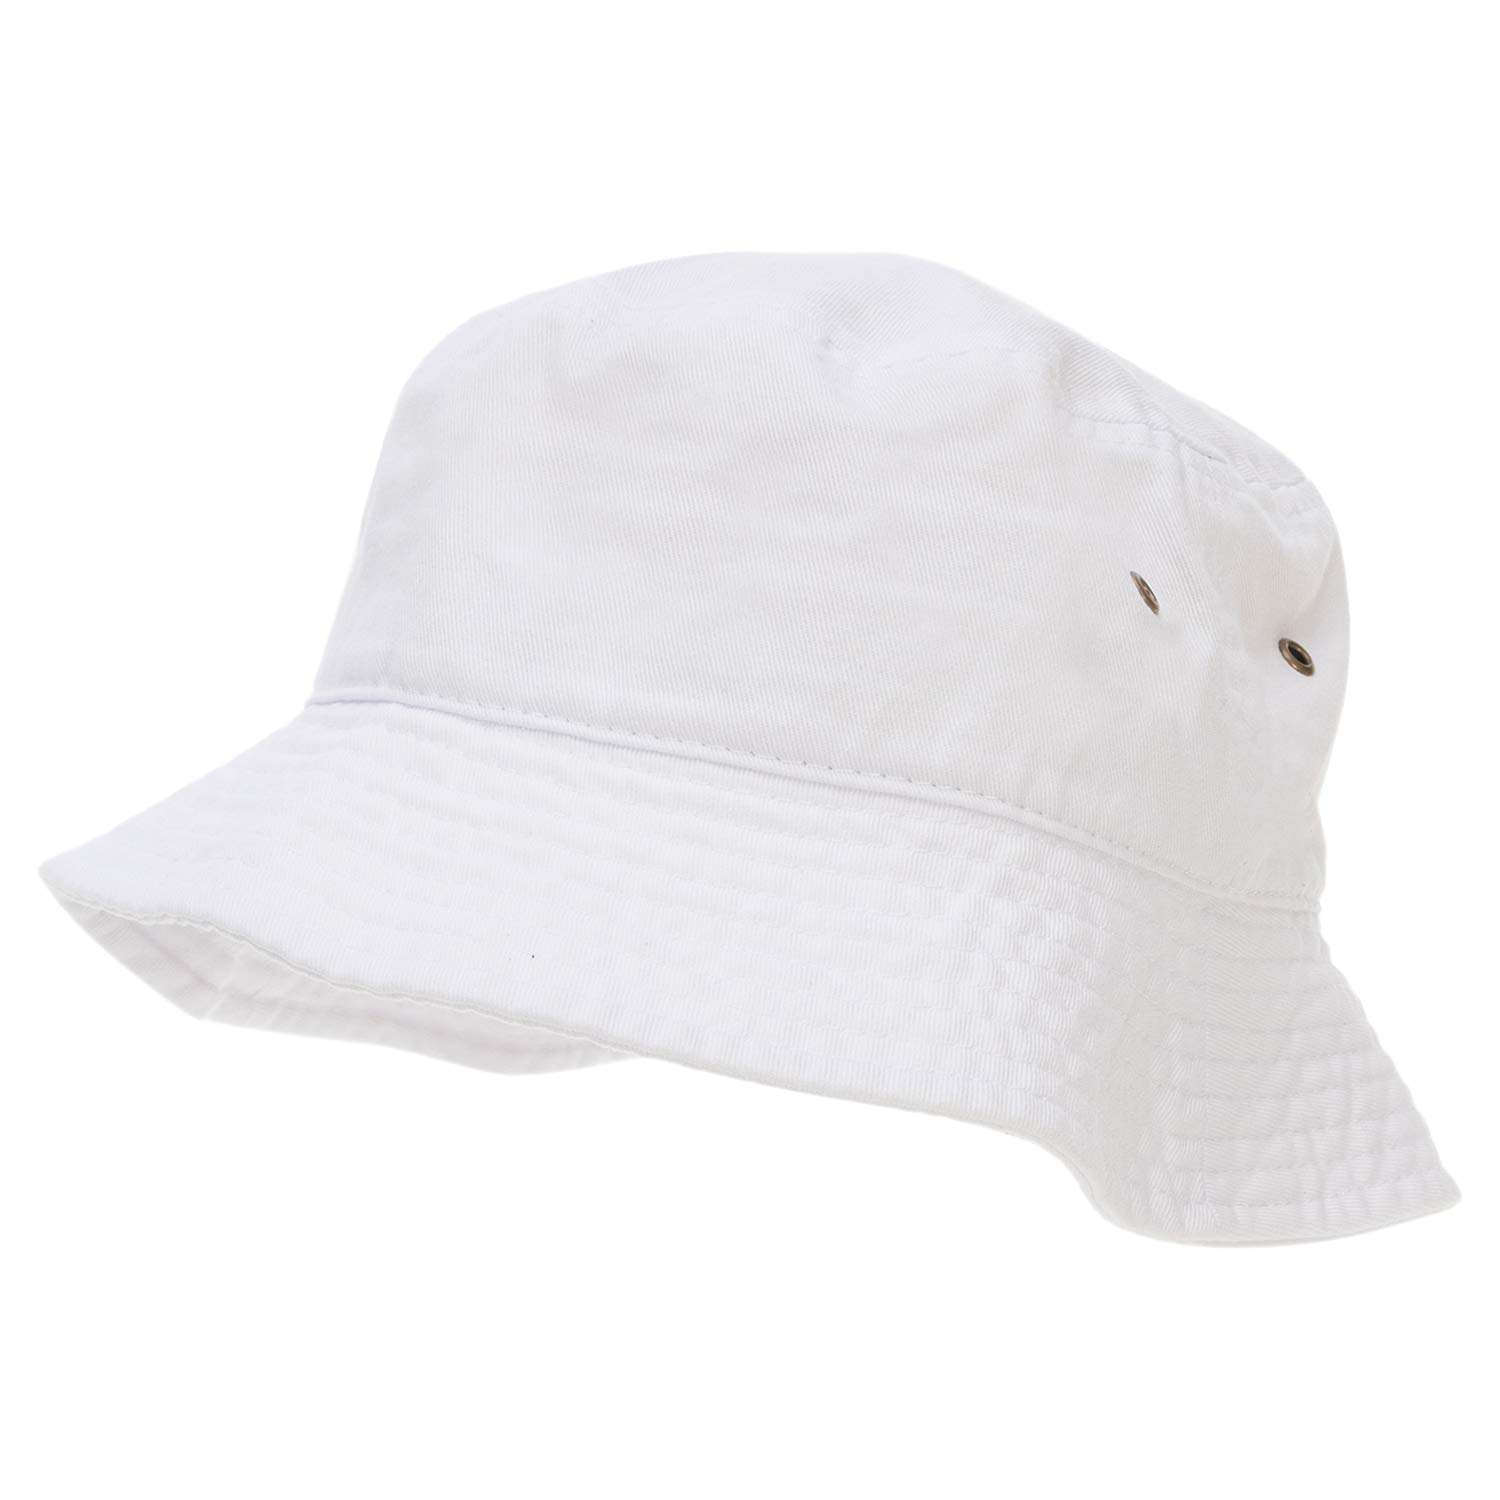 Cotton bucket hat - White - Men